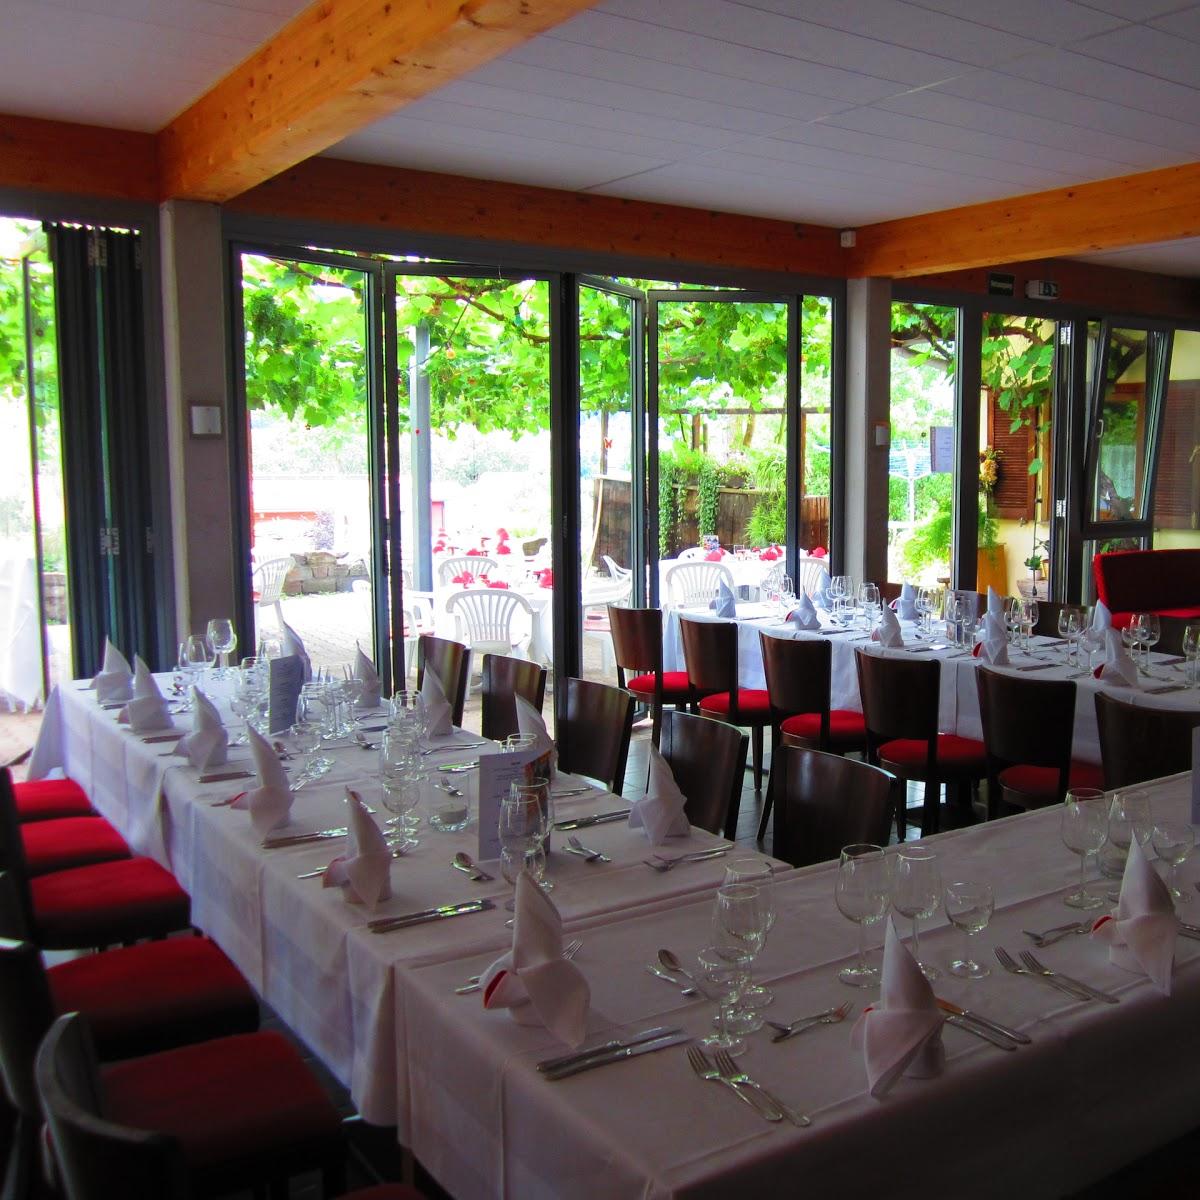 Restaurant "Restaurant  Zum Heiligenberg  GbR" in  Illingen